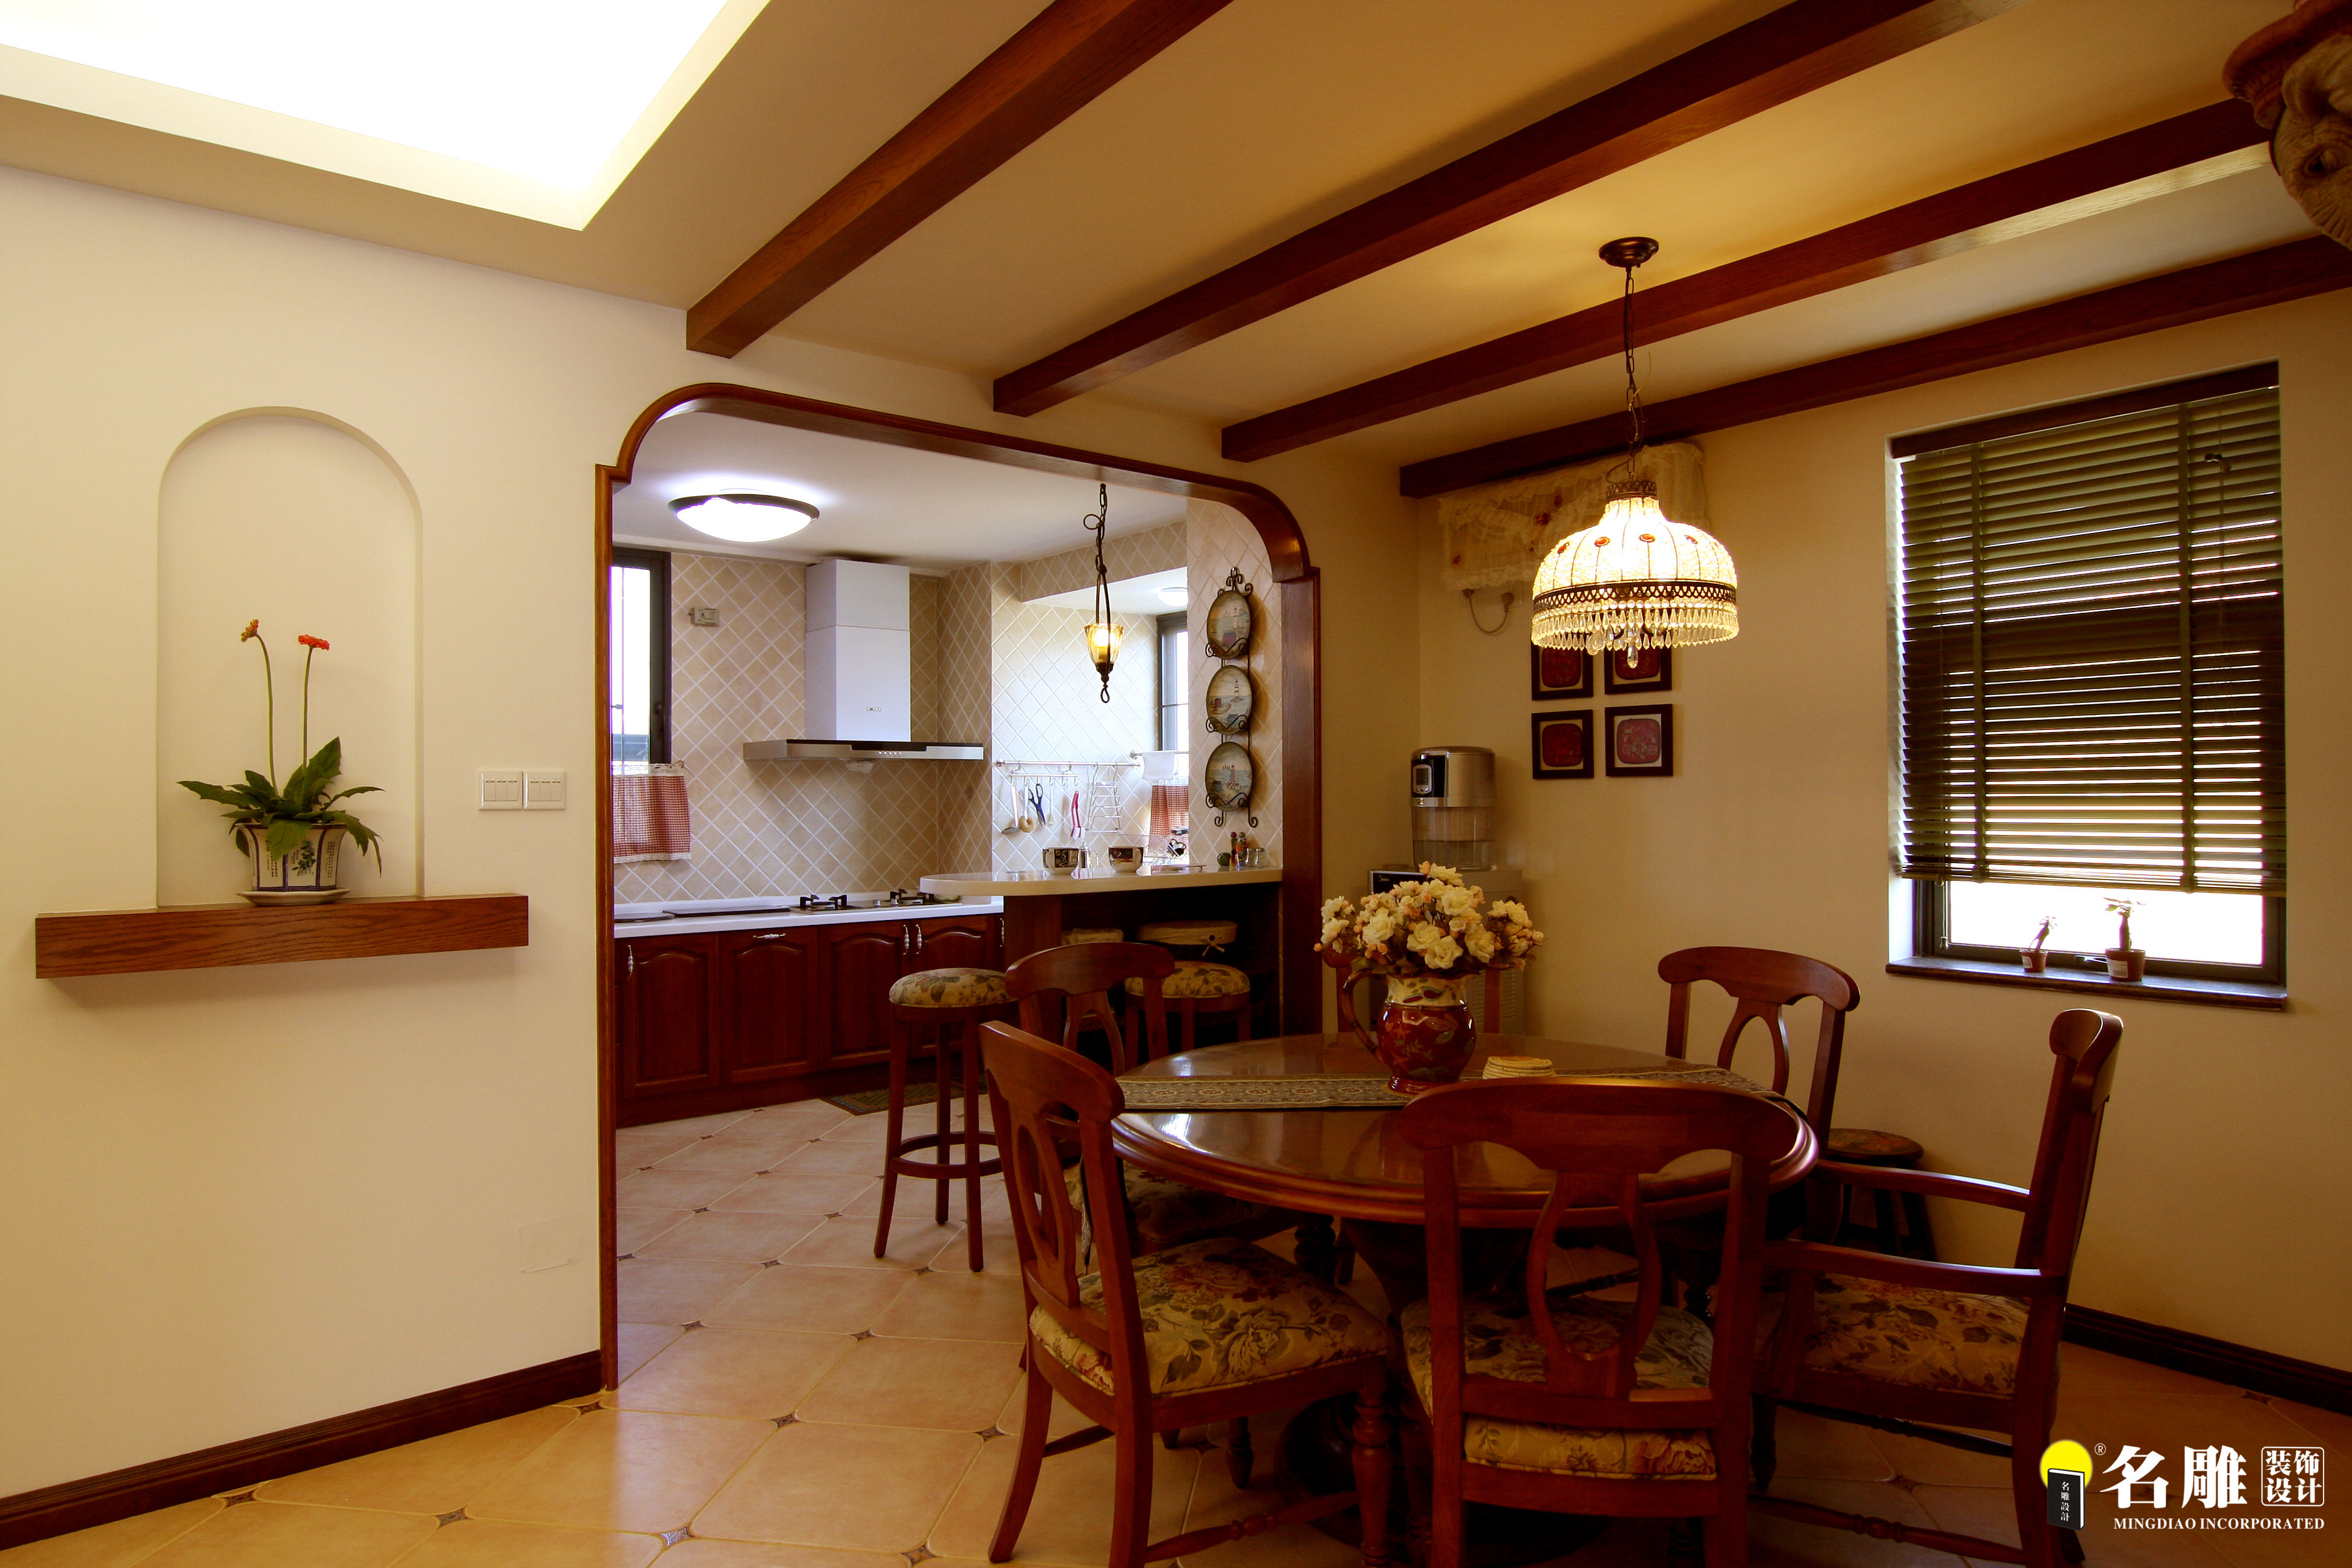 美式 别墅 自然 居家 名雕丹迪 高富帅 厨房图片来自名雕丹迪在美式风情-220平硅谷别墅自由空间的分享